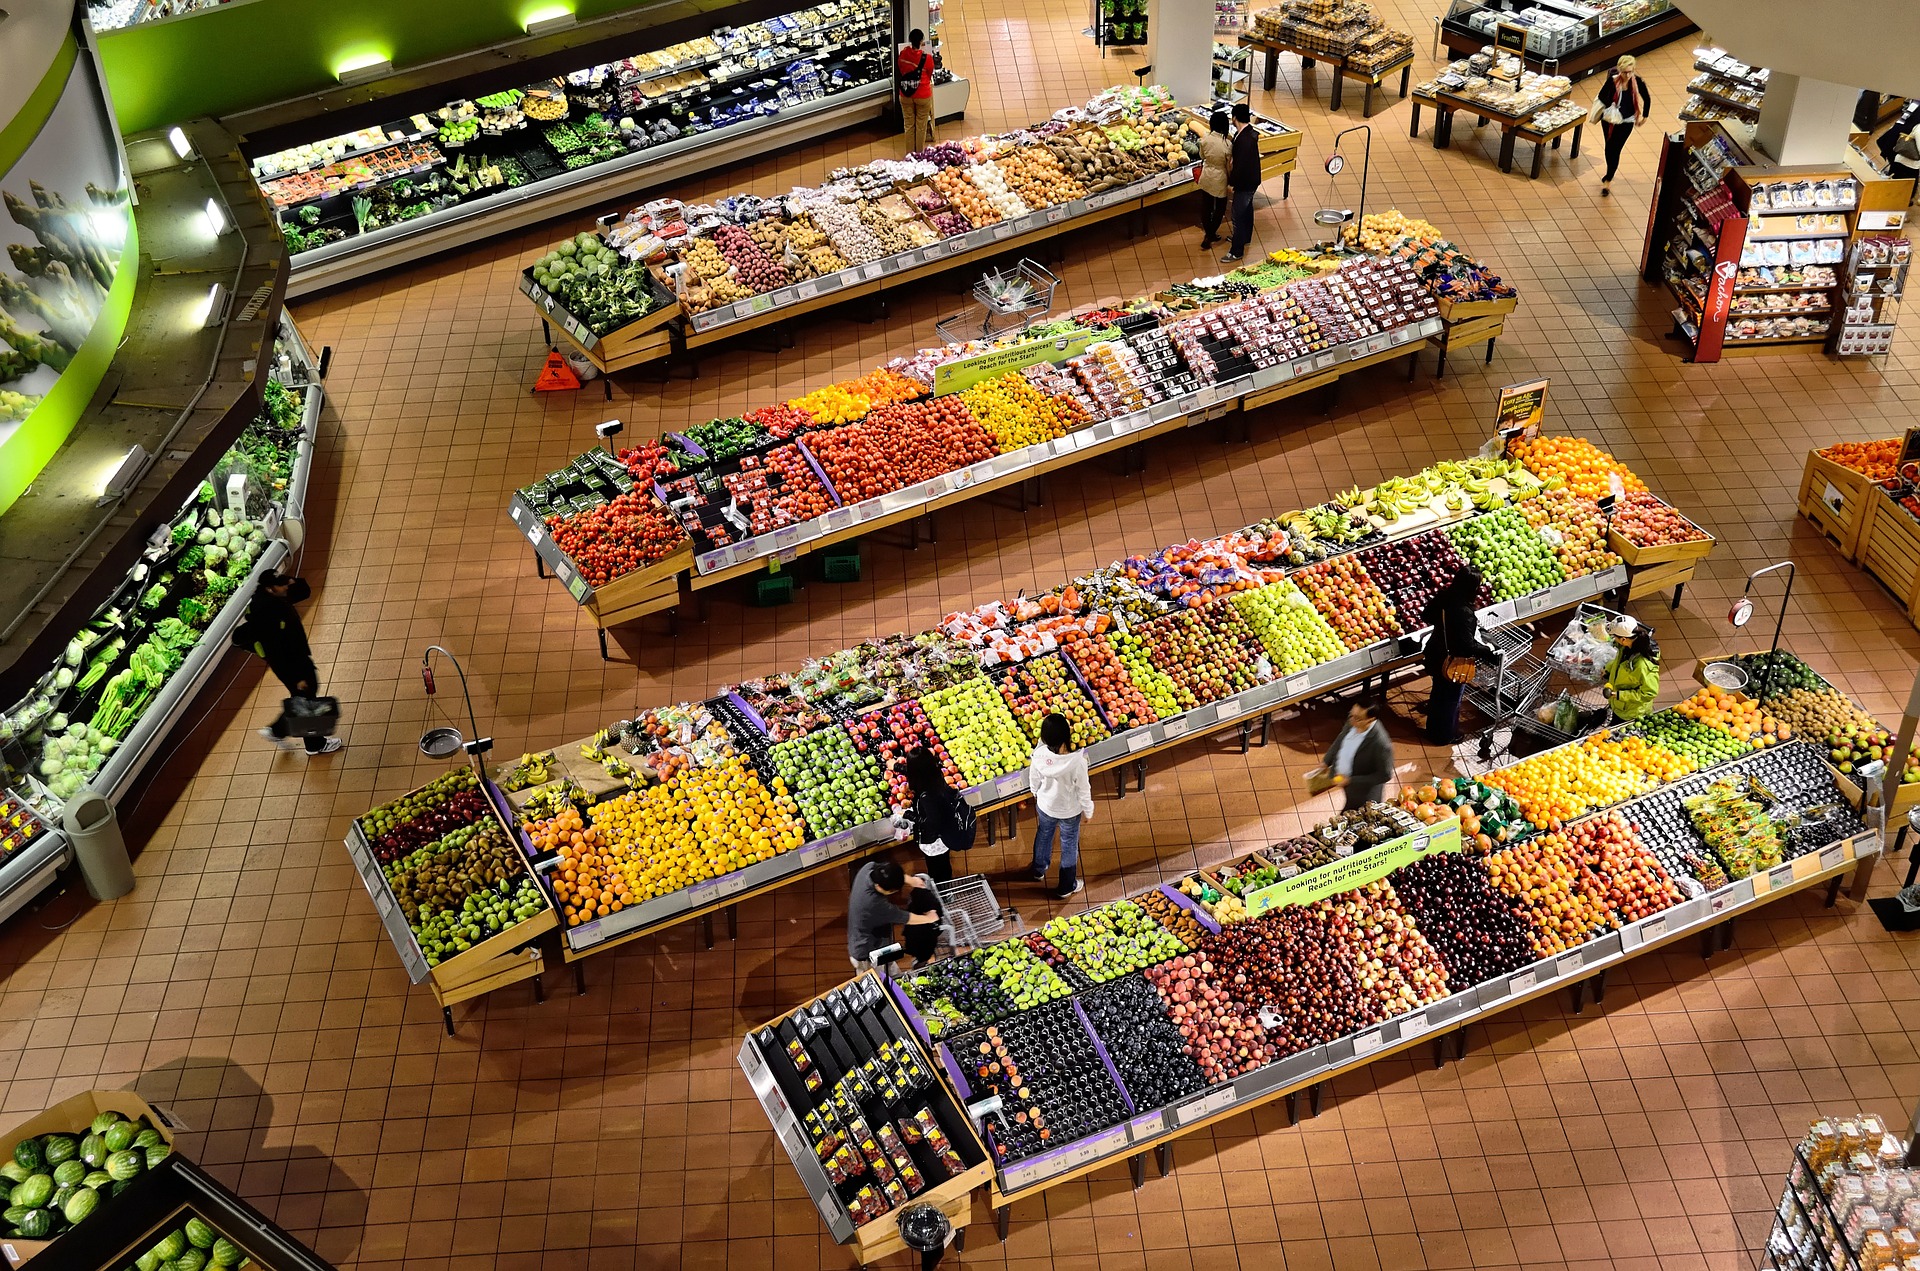 toma aerea de productos agropecuarios en un supermercado 